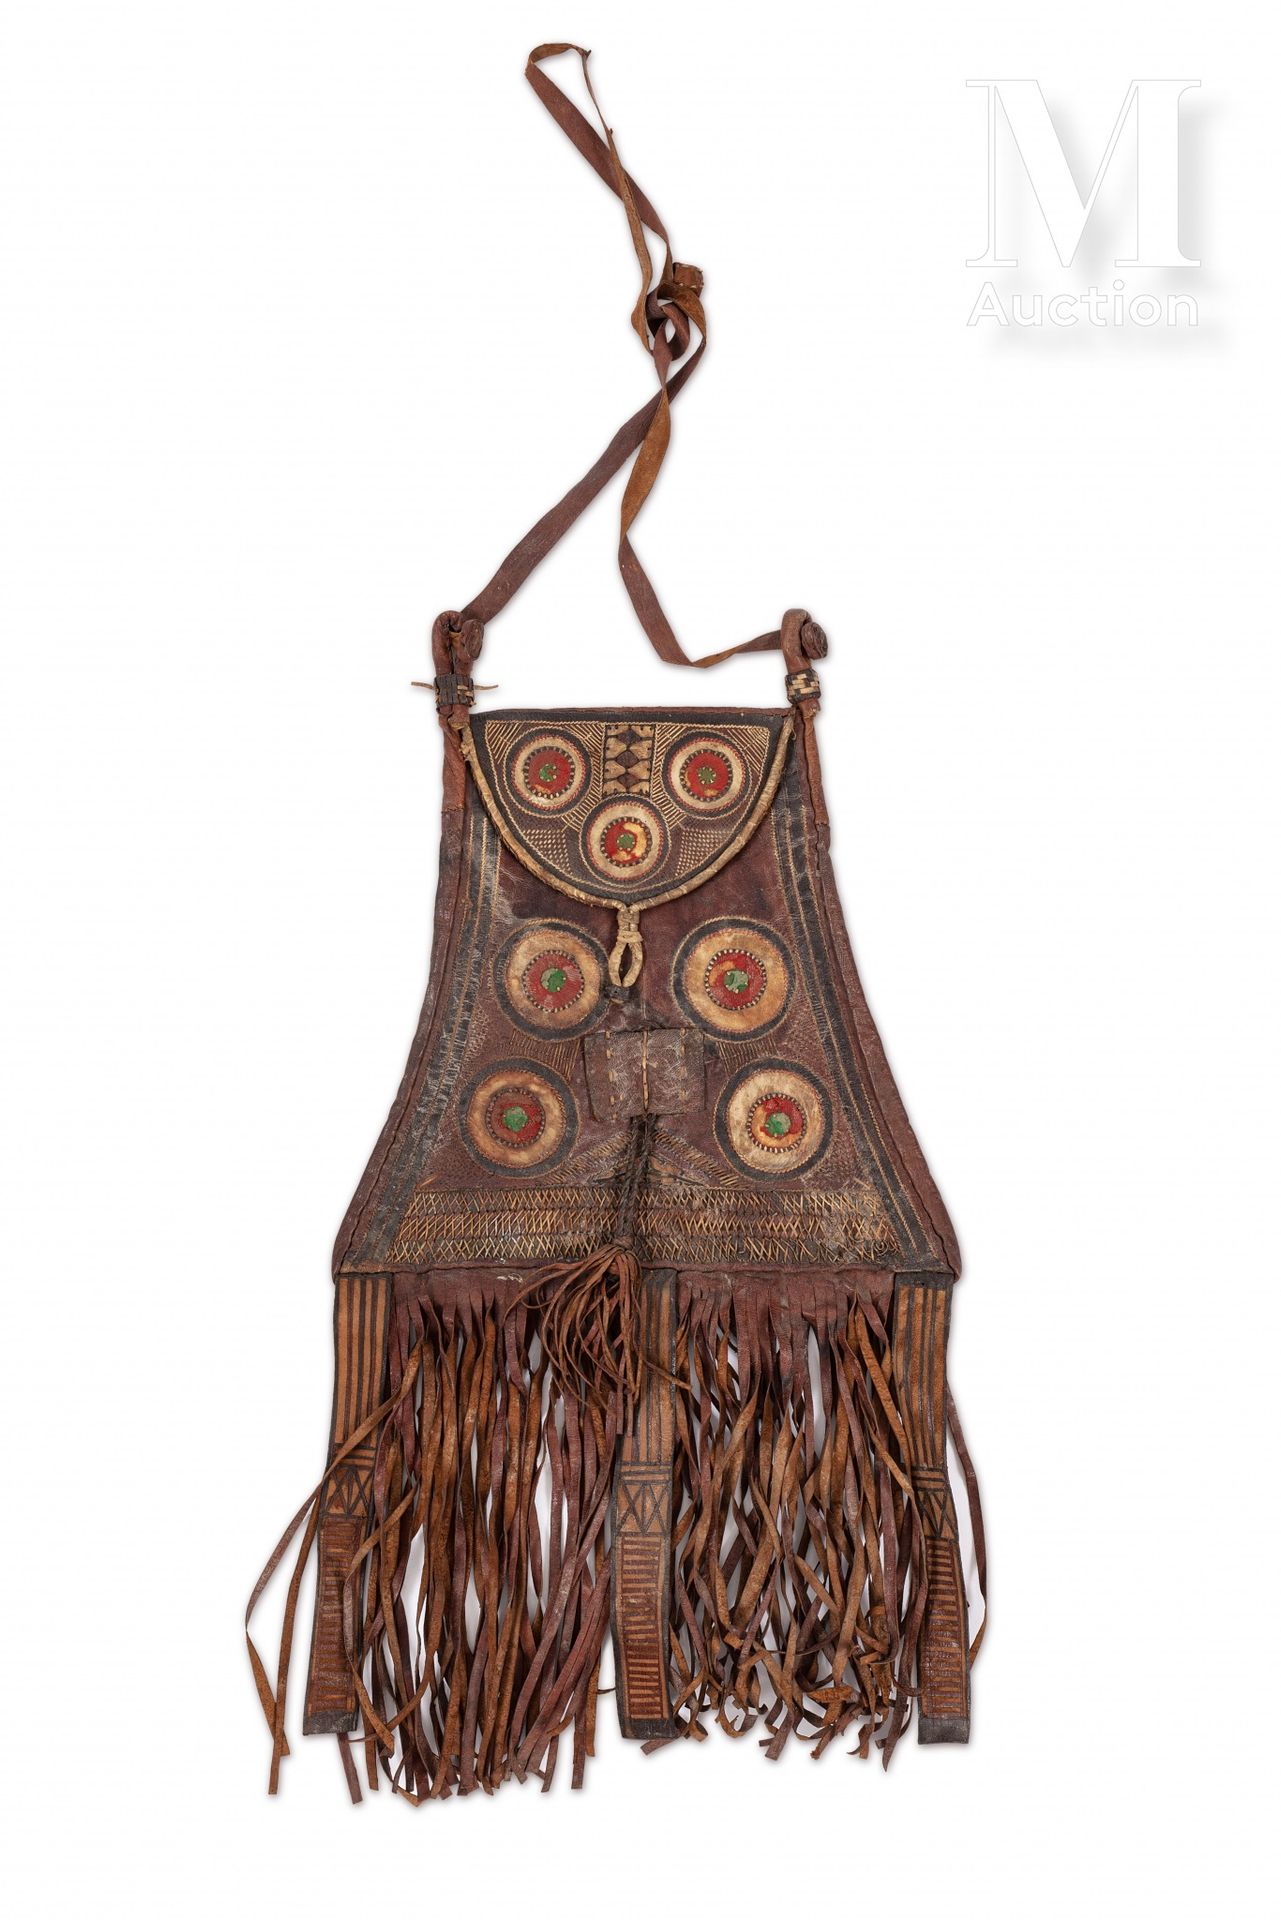 Sac du Sahel 毛里塔尼亚或西撒哈拉

绣有棕榈叶和几何装饰的皮包，用红色和绿色织物装饰。镶边。

H.52厘米，不含手柄